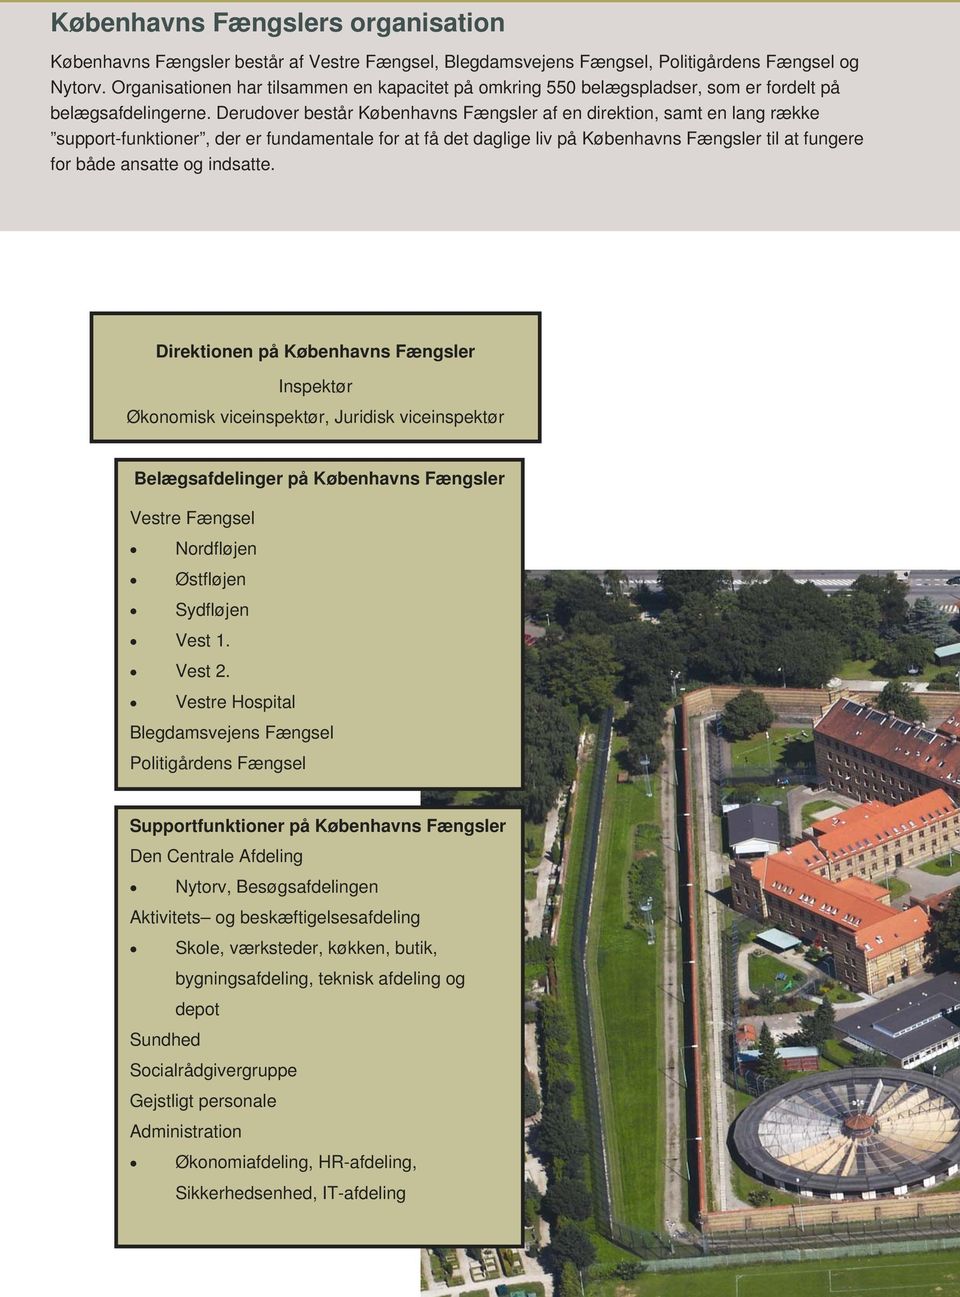 Københavns Fængsler. Én arbejdsplads mange opgaver - PDF Gratis download